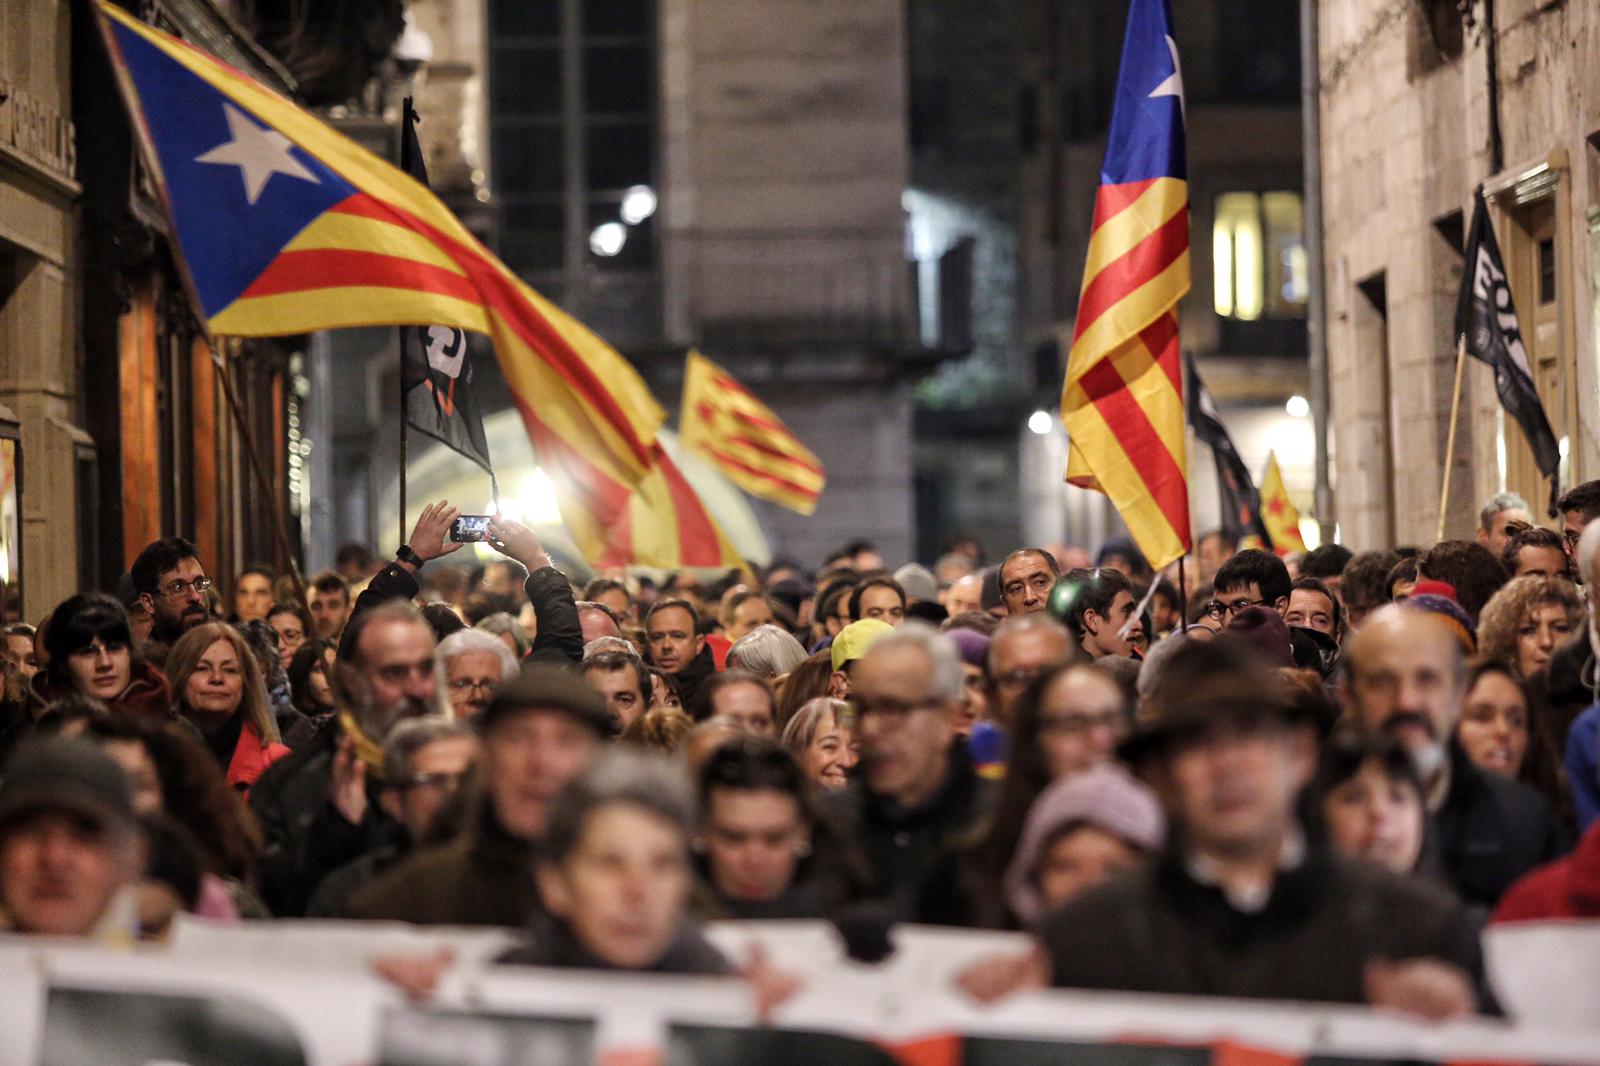 Allau de mobilitzacions arreu de Catalunya per denunciar les detencions